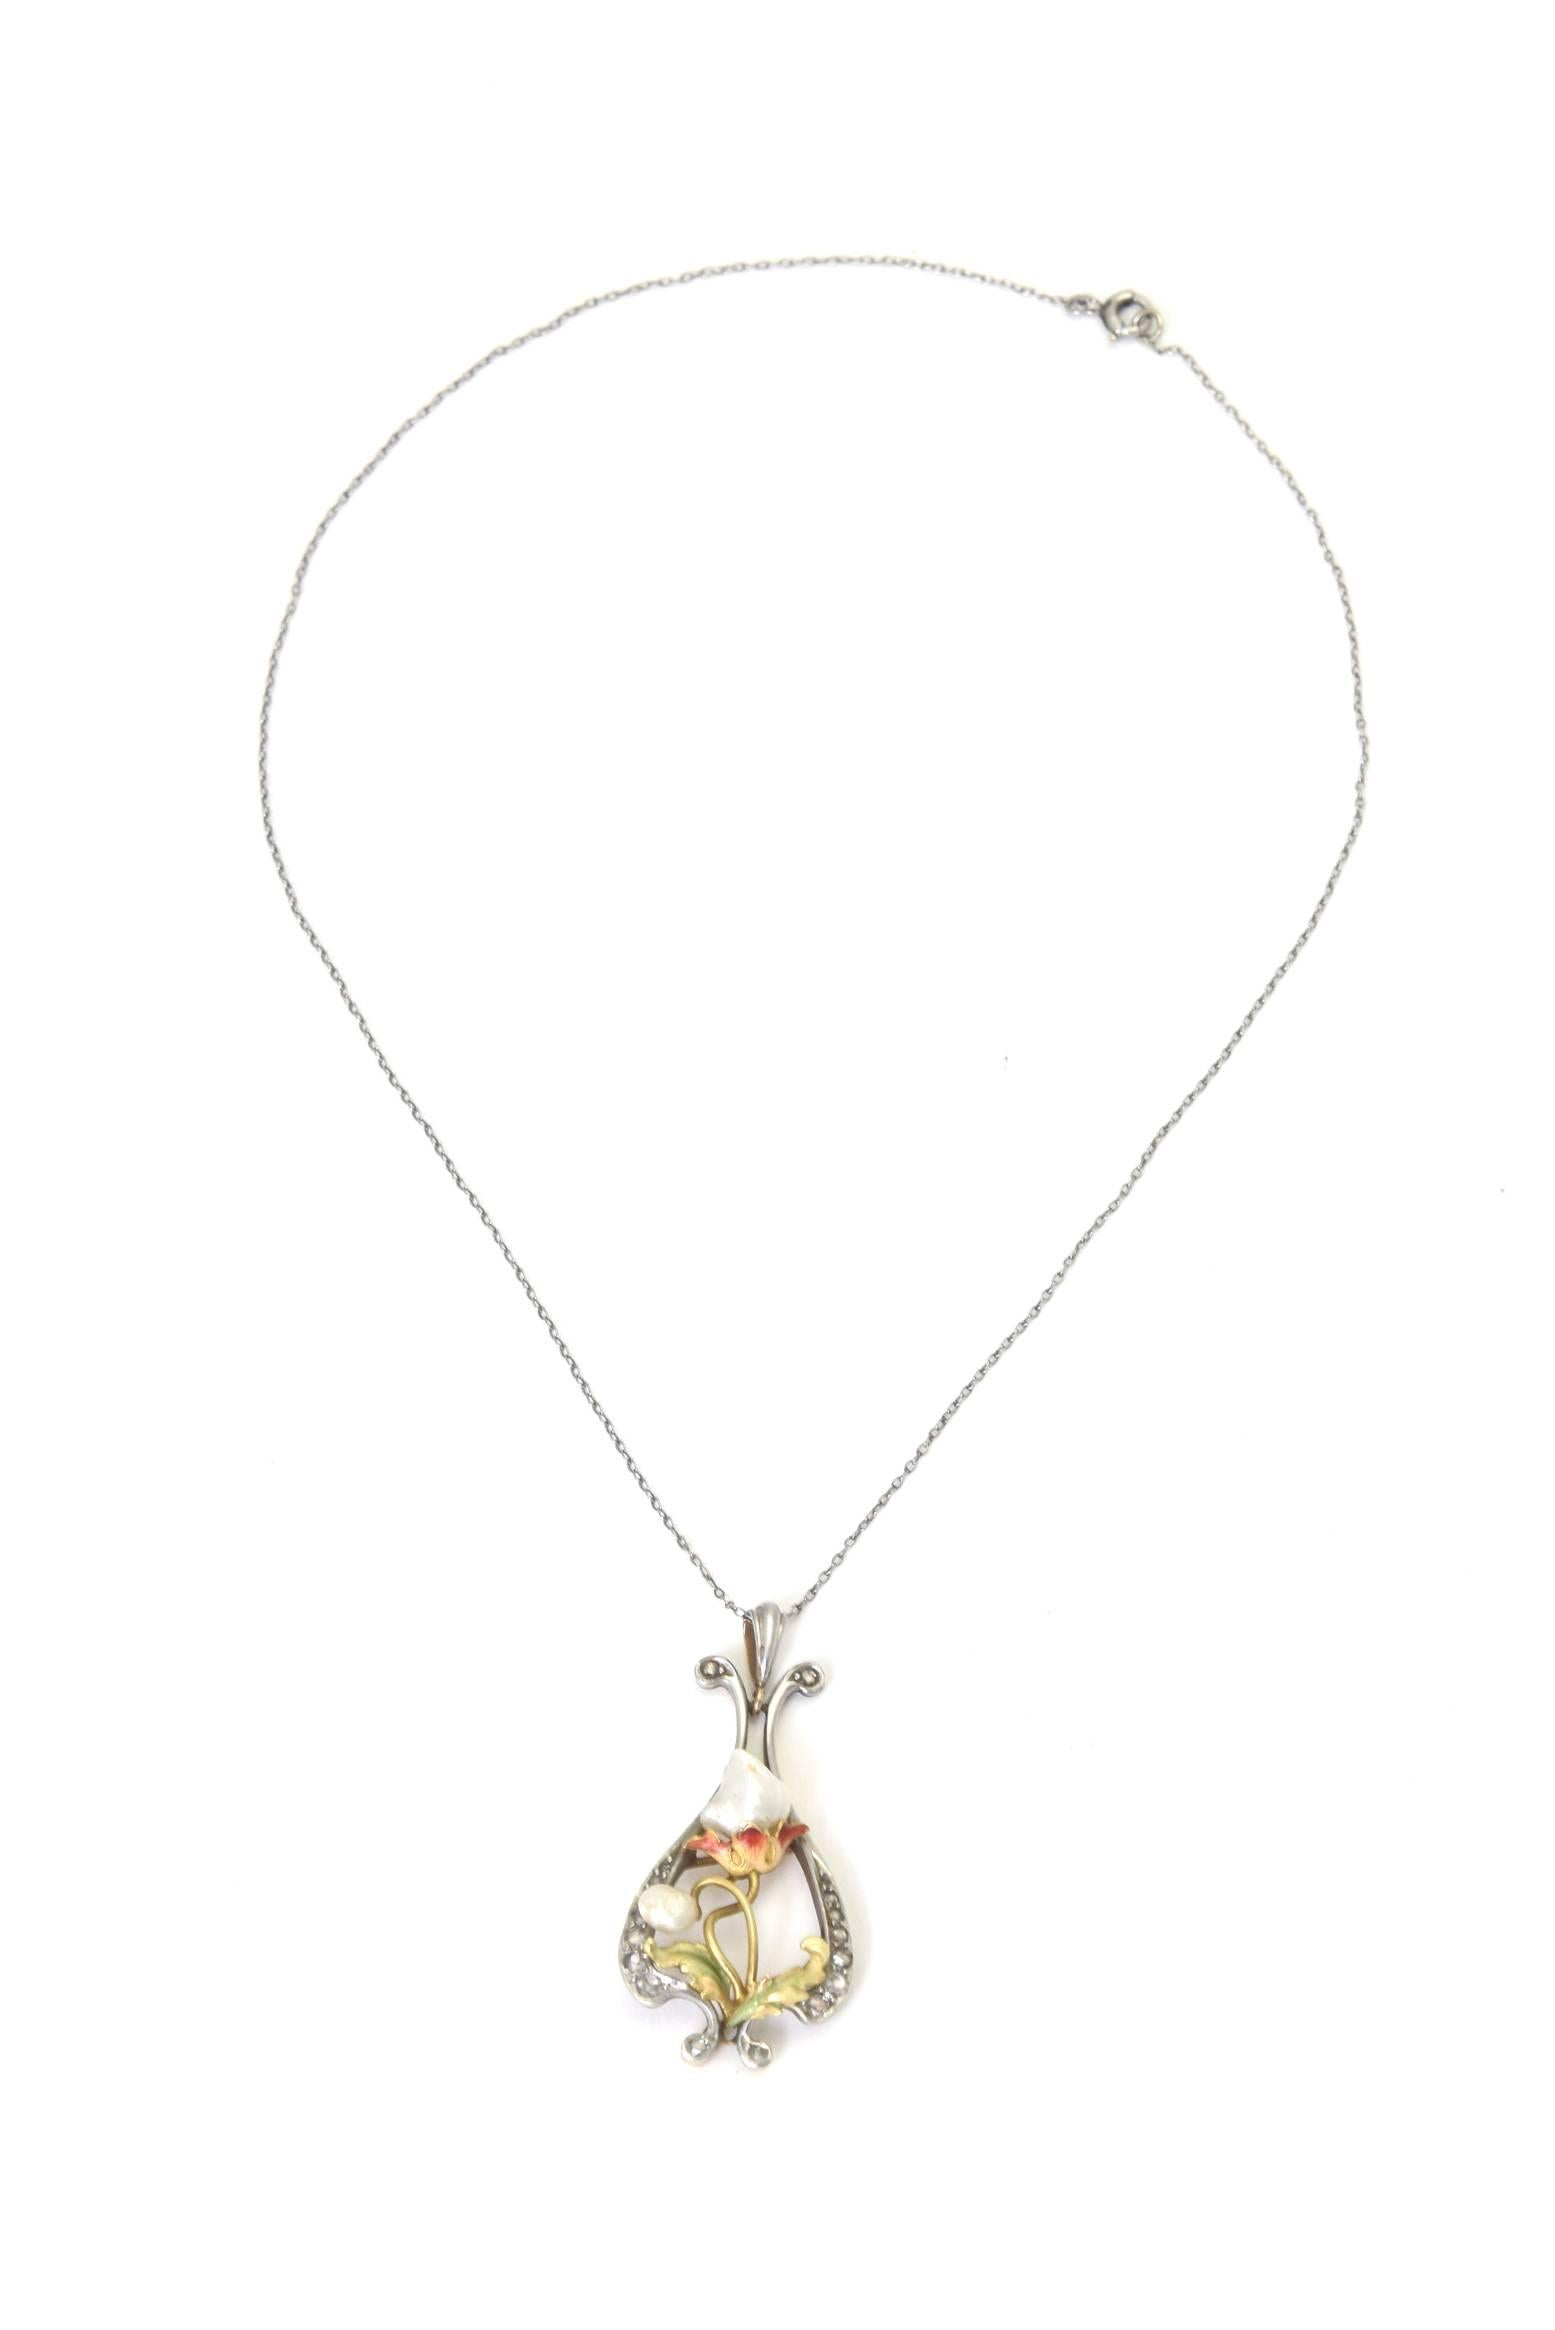 Delicate floral Art Nouveau gold pendant on a platinum chain.